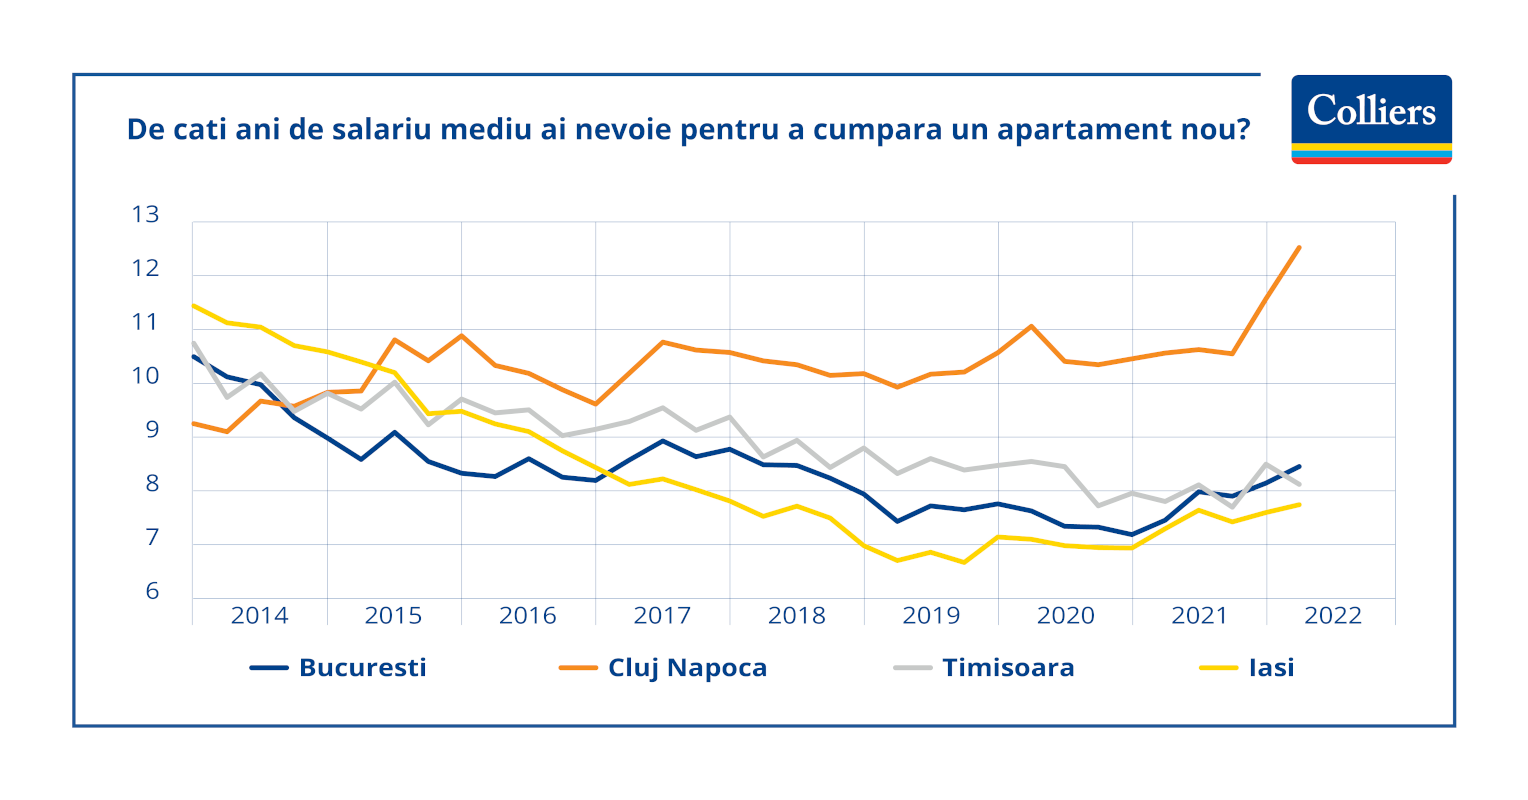 Colliers: Locuințele noi devin din ce în ce mai puțin accesibile pentru români. Cluj-Napoca se menține pe primul loc în topul prețurilor la imobiliare